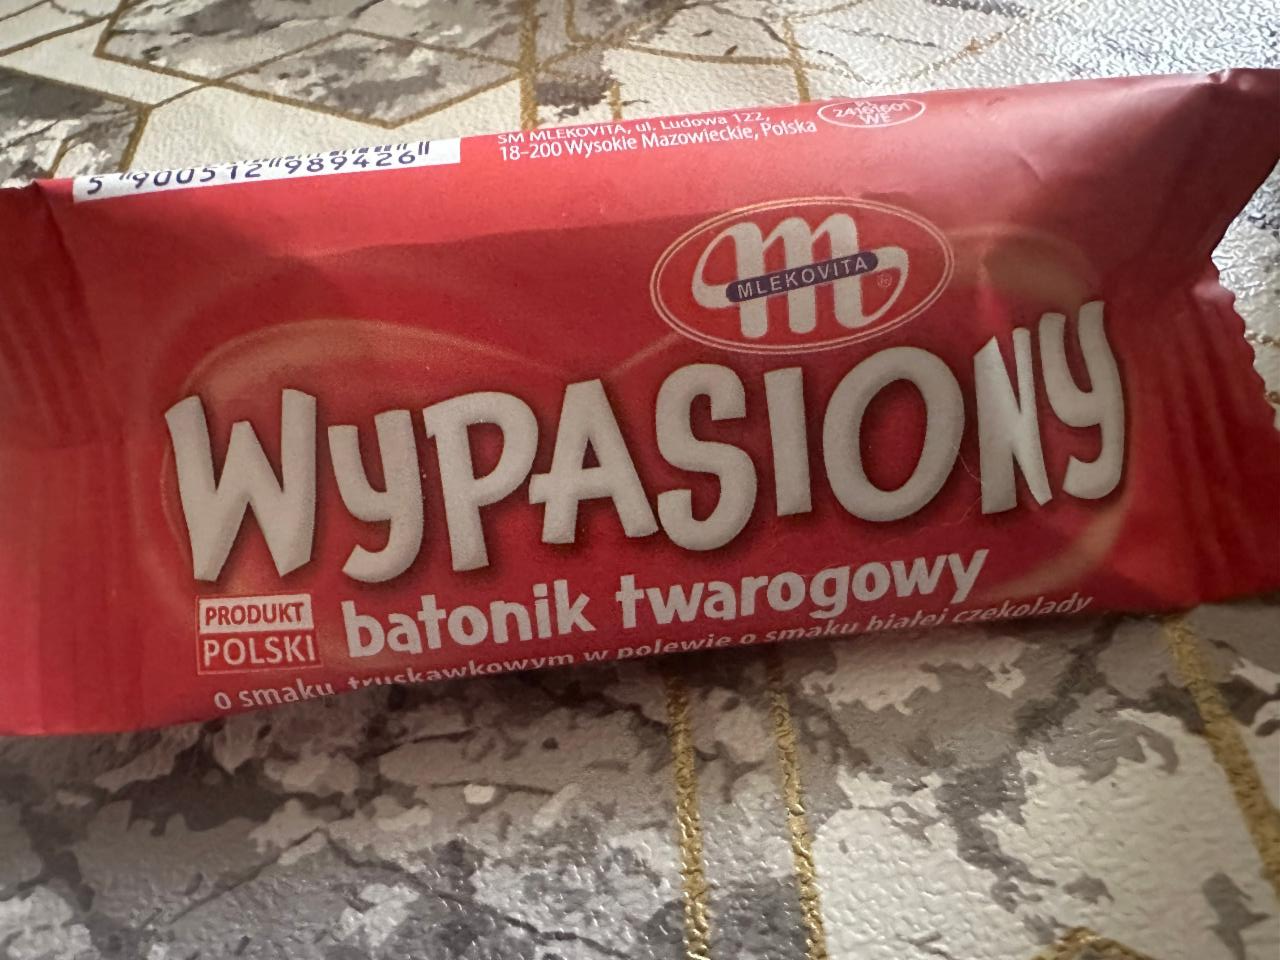 Фото - Wypasiony batonik twarogowy o smaku truskawkowym w polewie o smaku białej czekolady Mlekovita